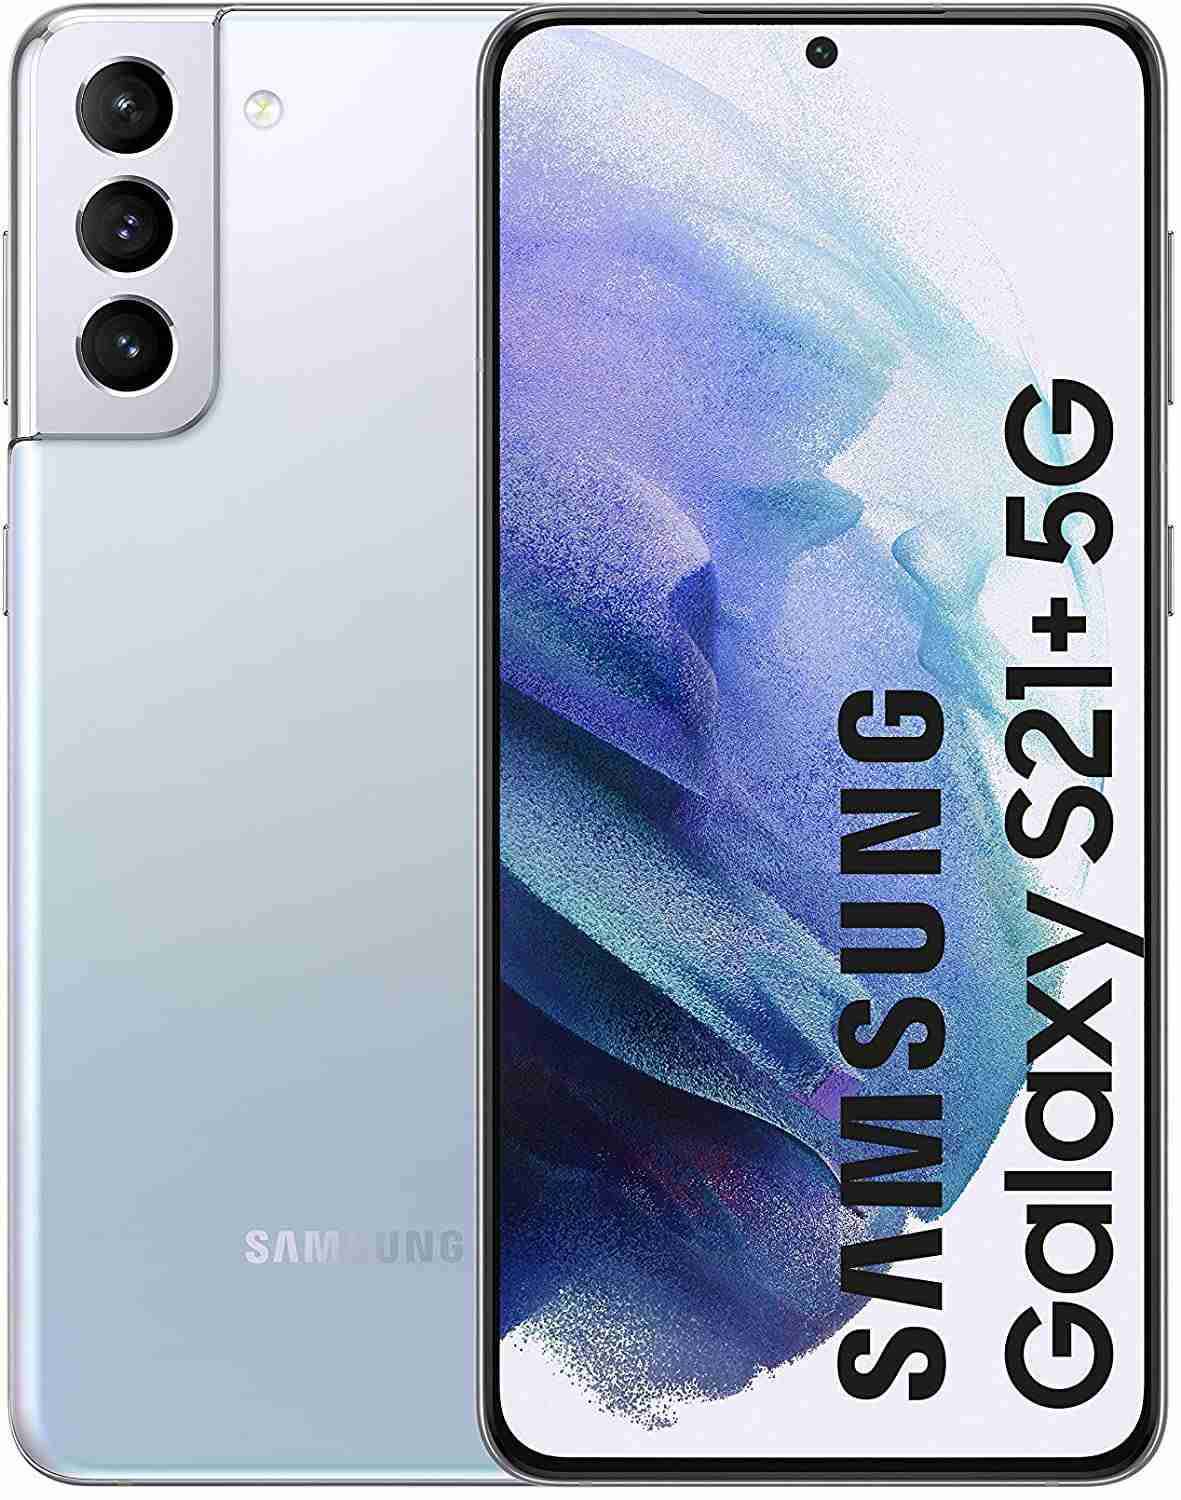 samsung galaxy s21 plus 5g scheda tecnica prezzo e recensione